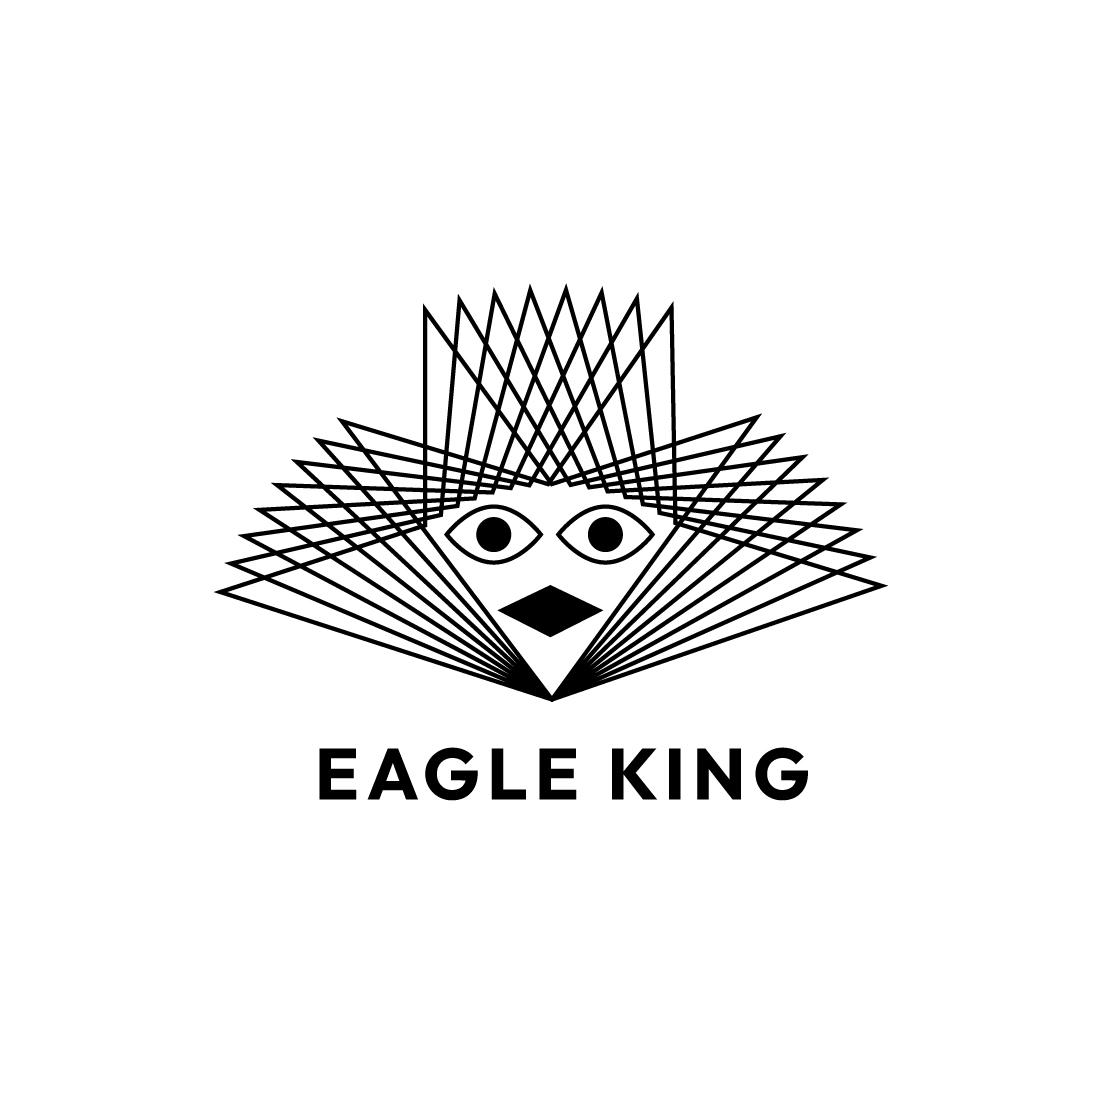 Regal Eagle King Line Art Logo Design - Majestic Emblem for Your Brand preview image.